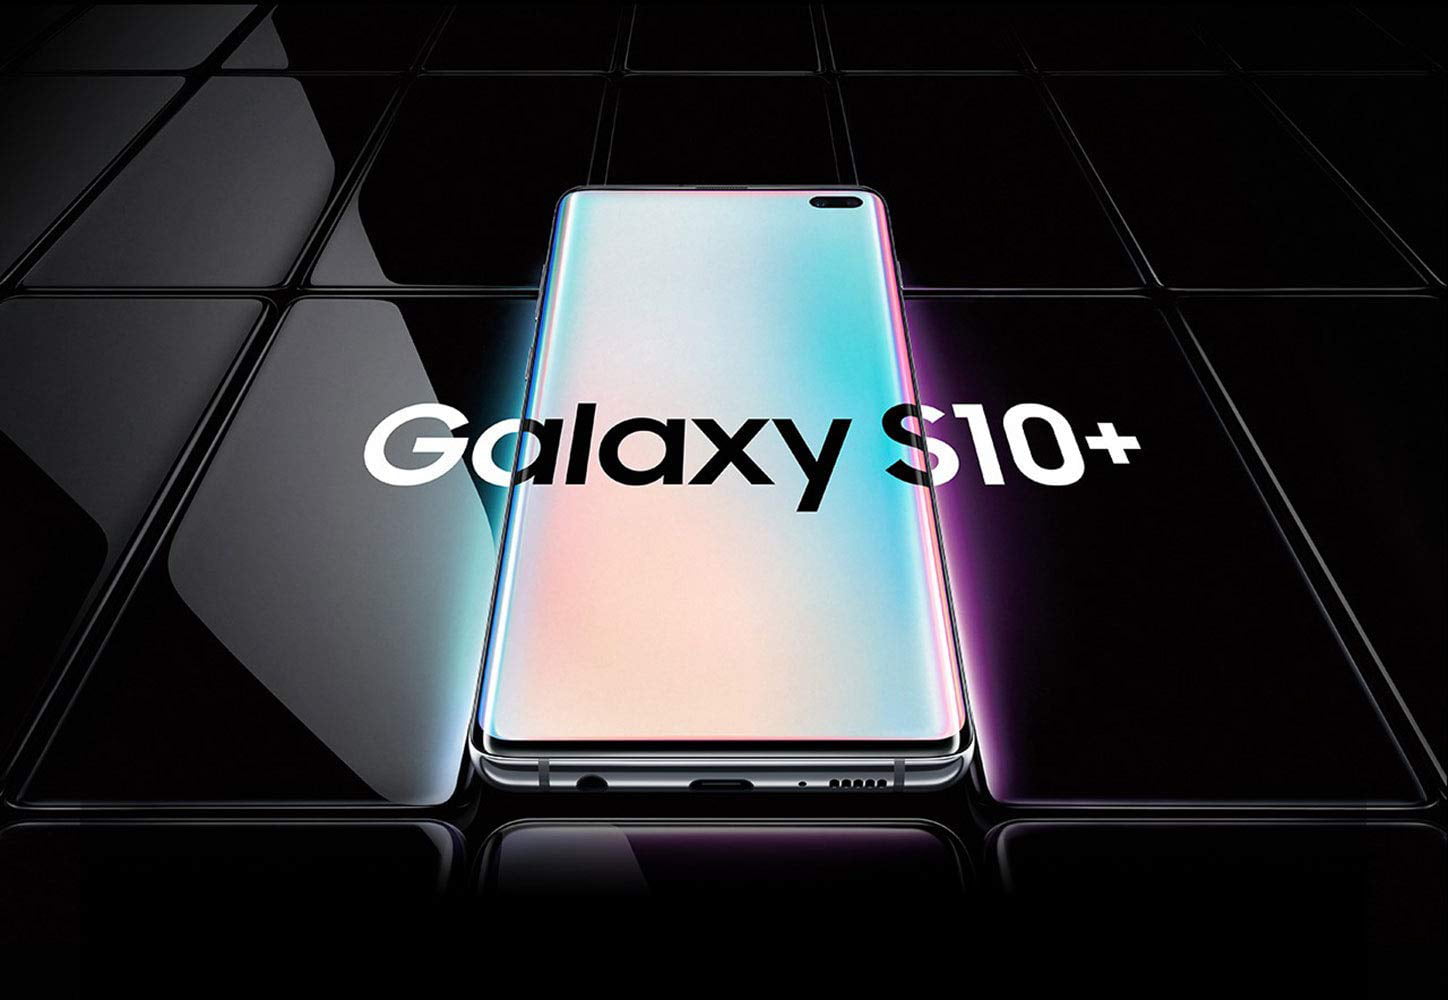 Samsung Galaxy S10+ SM-G975F/DS 512GB+8GB Dual SIM Factory